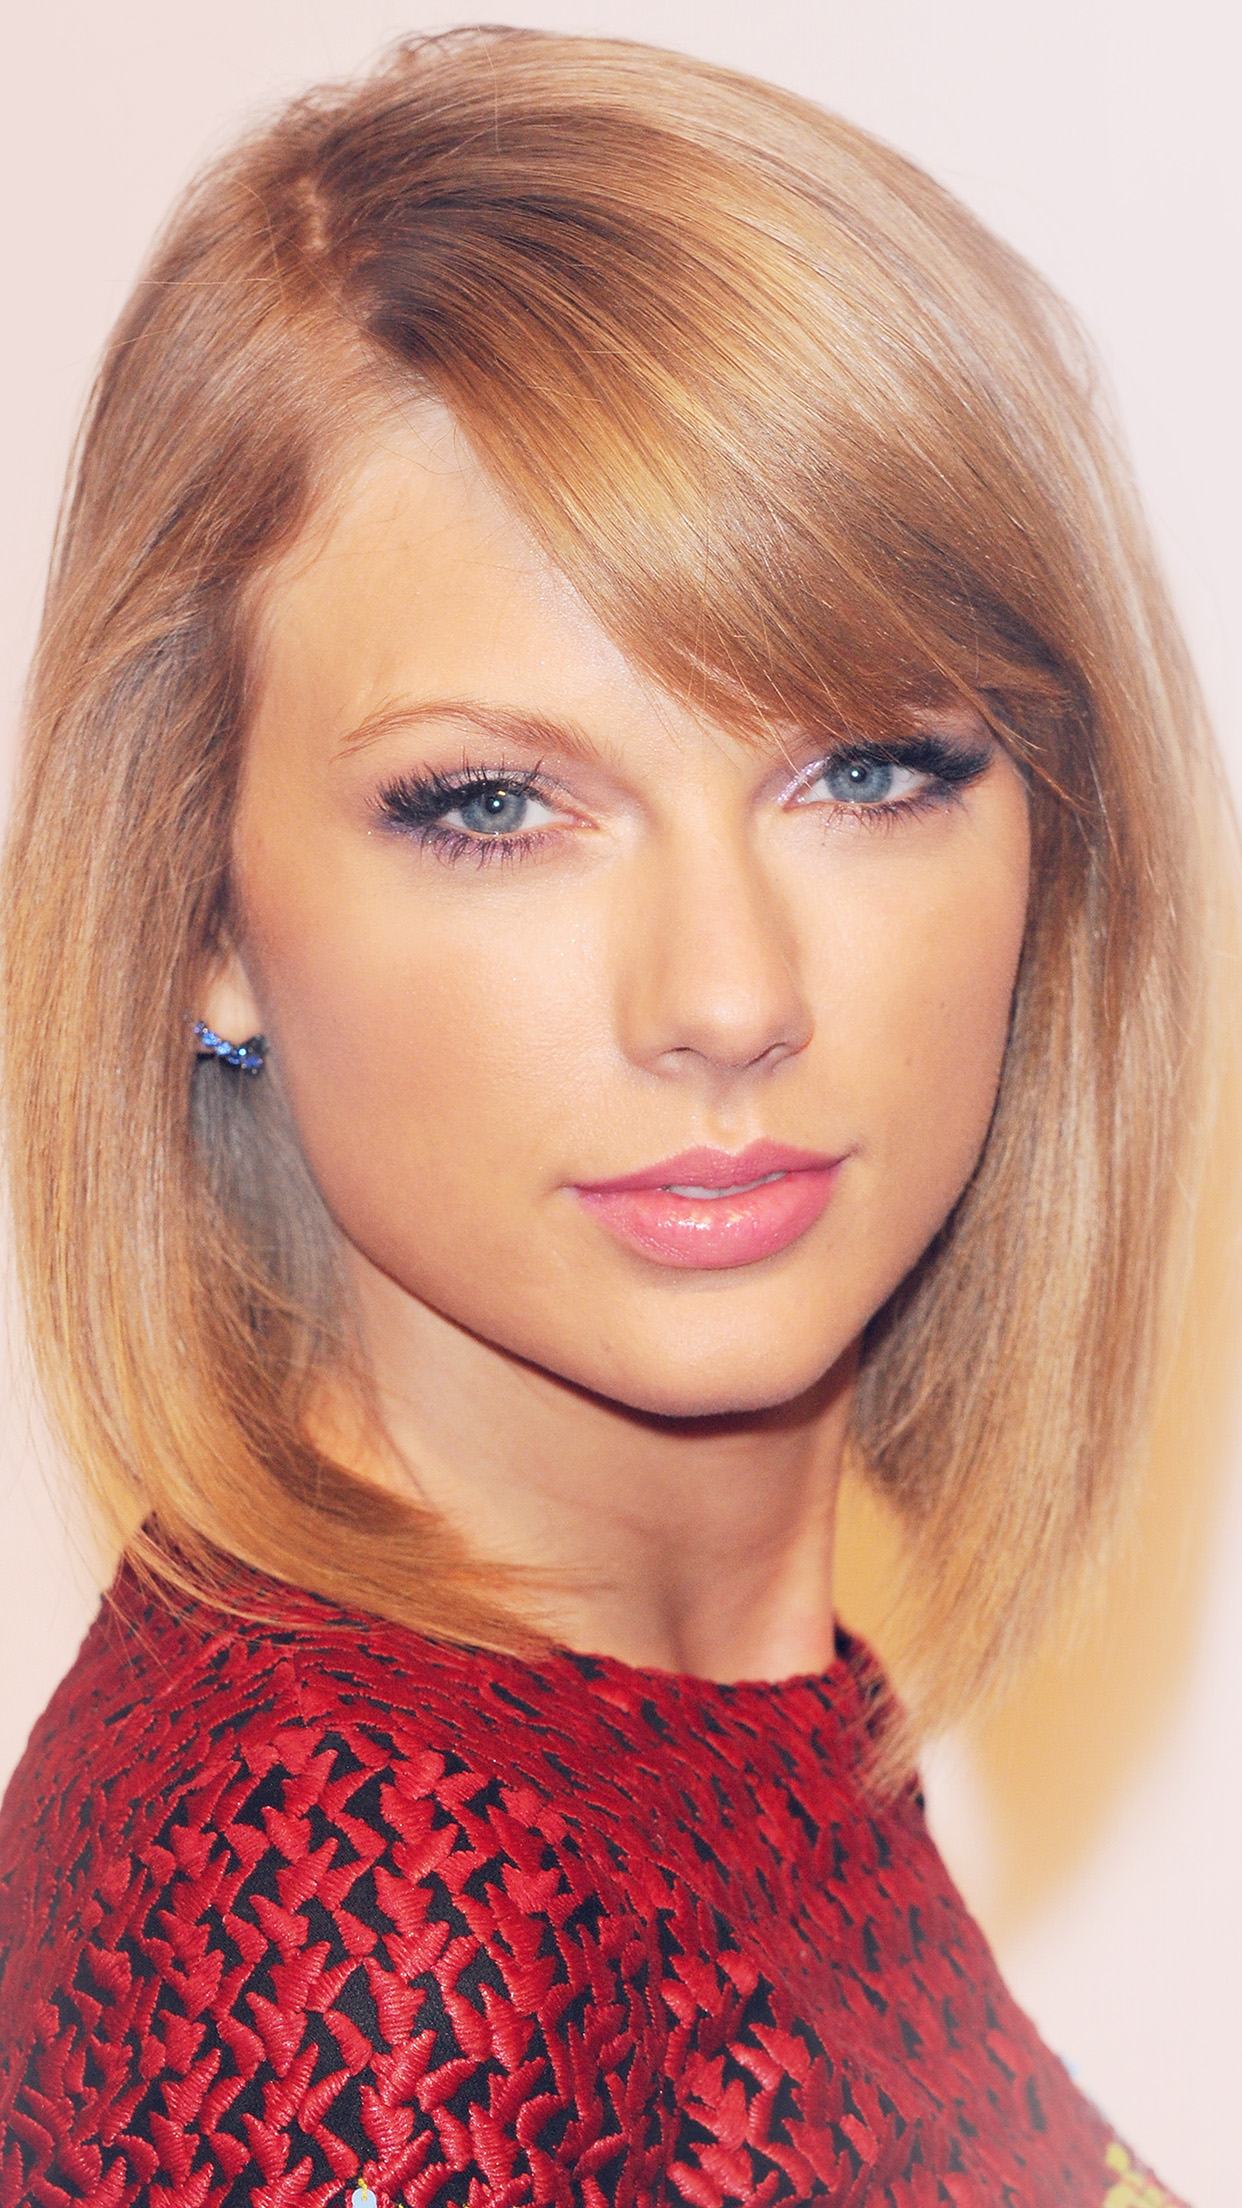 Taylor Swift Face Cute Beautiful Singer Android Wallpaper - Taylor Swift Face , HD Wallpaper & Backgrounds